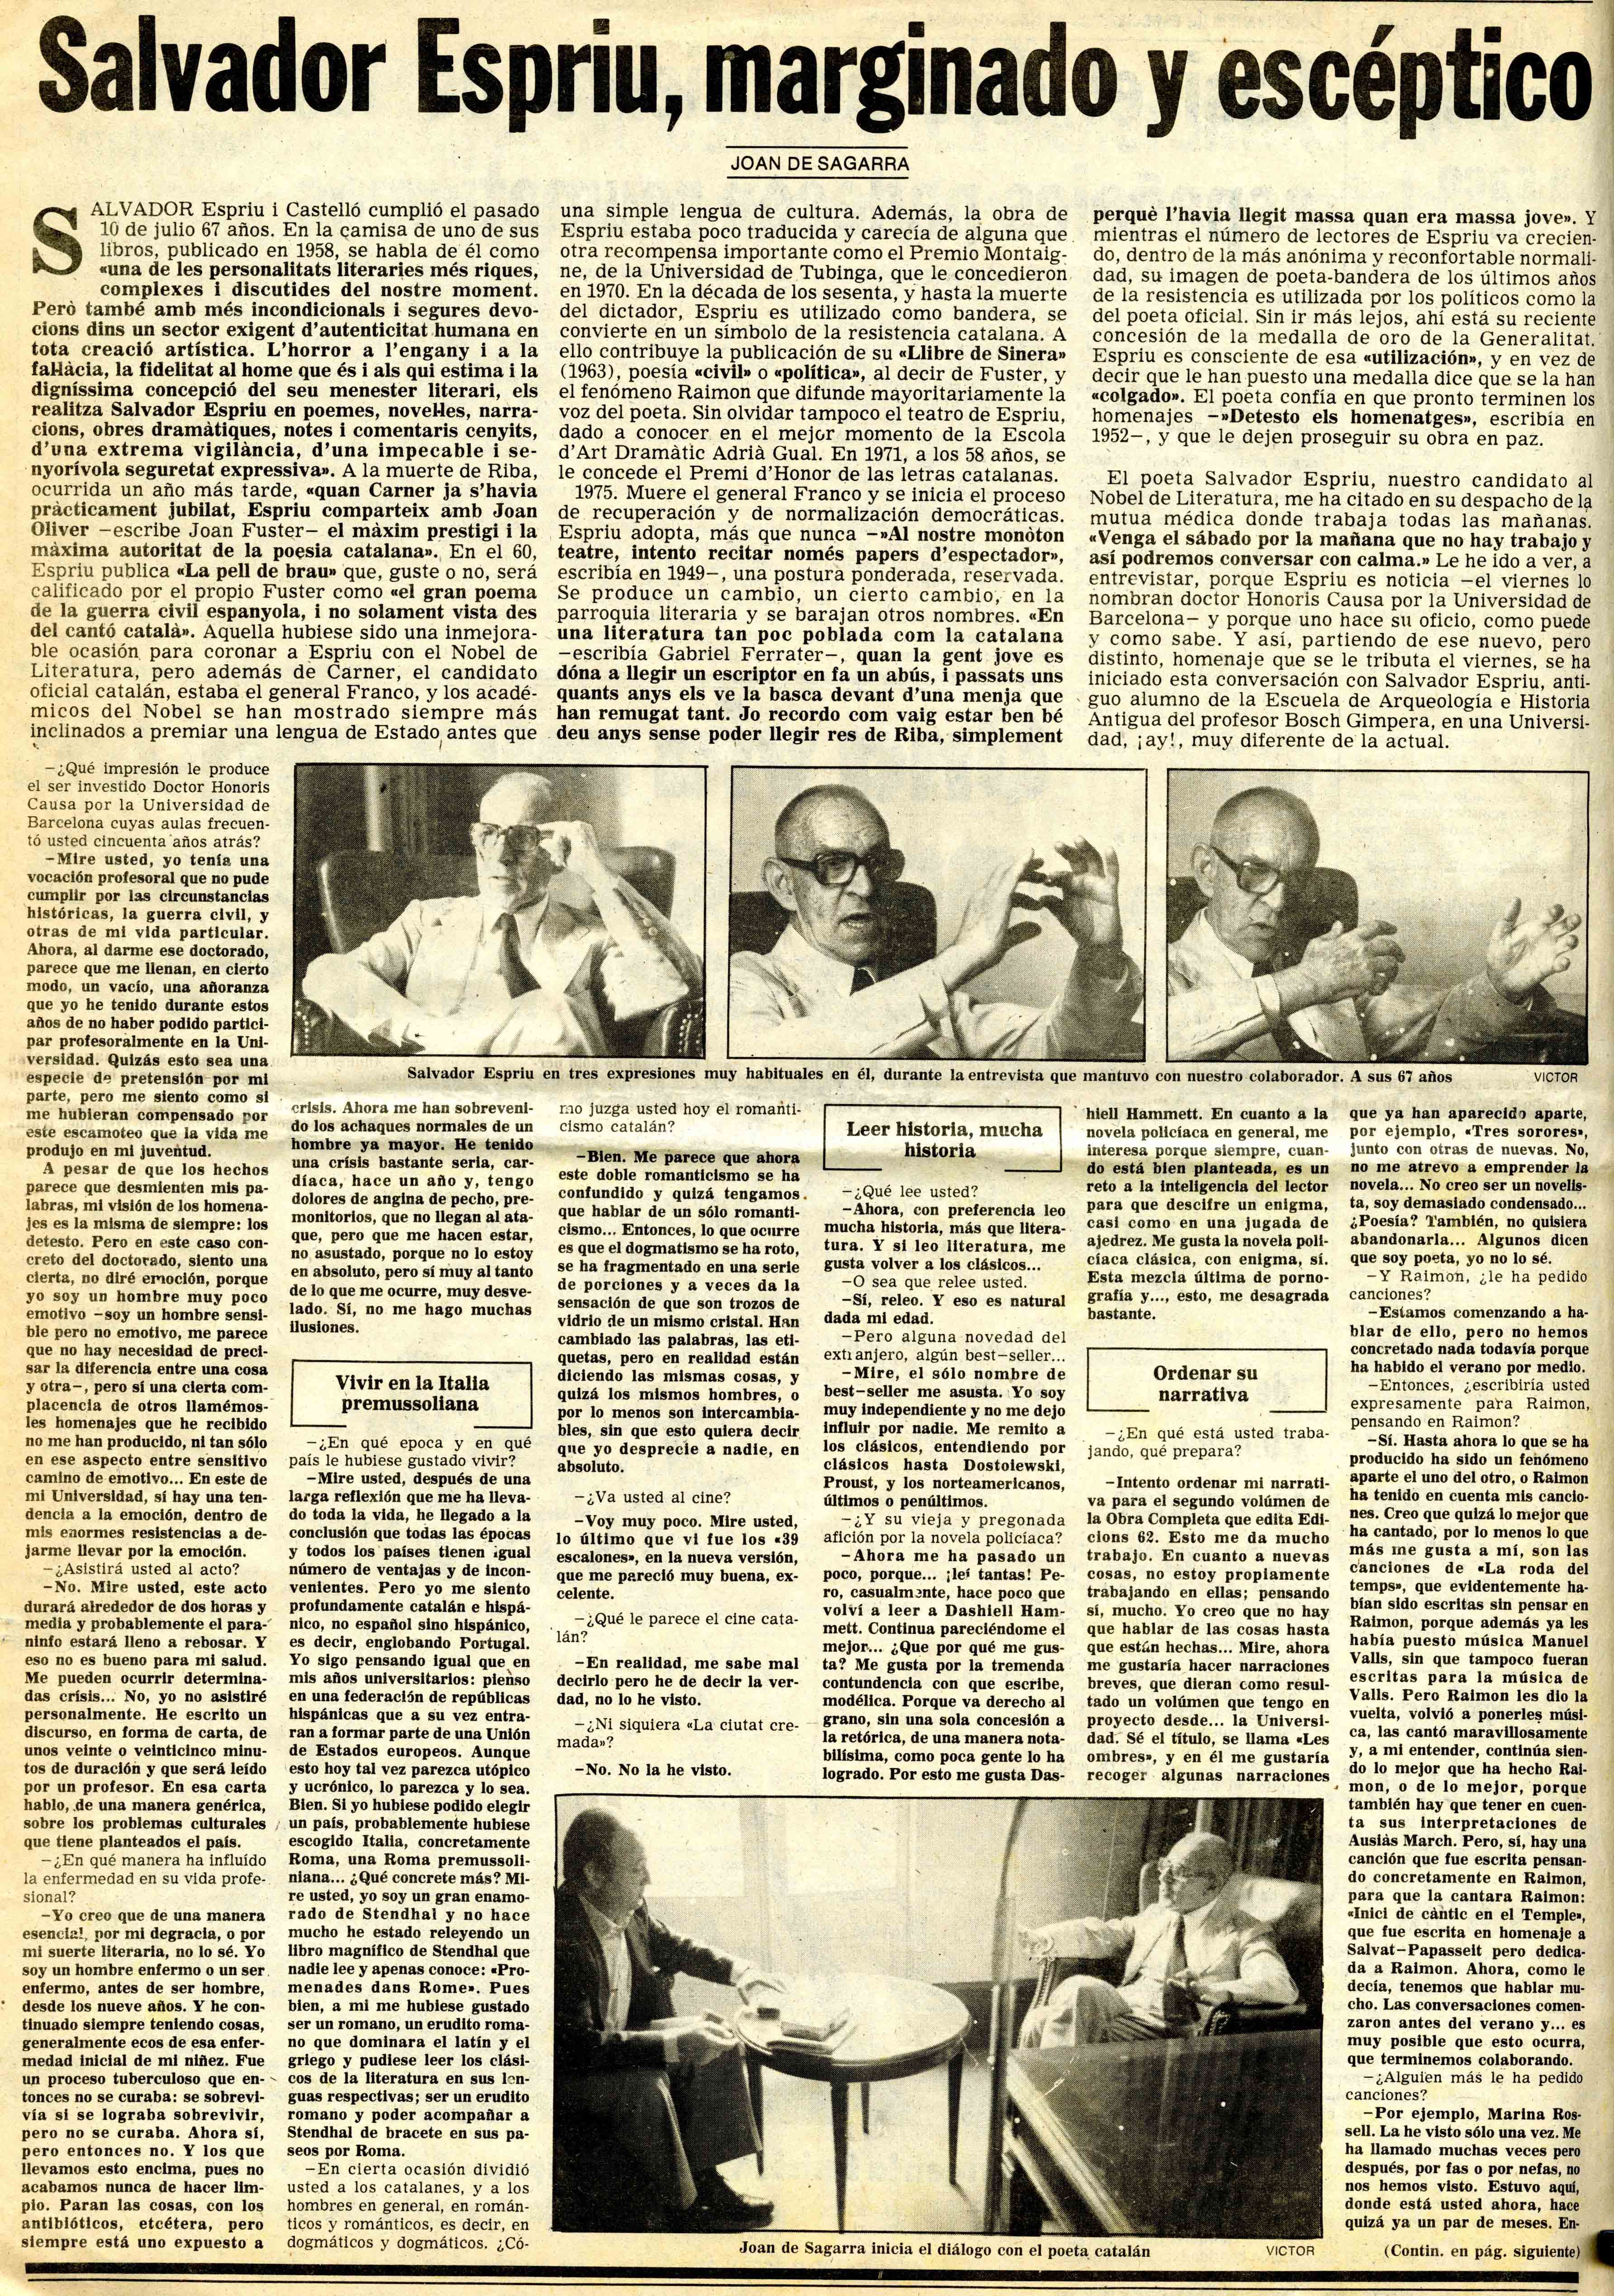 Segarra, Joan de. Salvador Espriu, marginado y escéptico. El Noticiero Universal, 07/10/1980